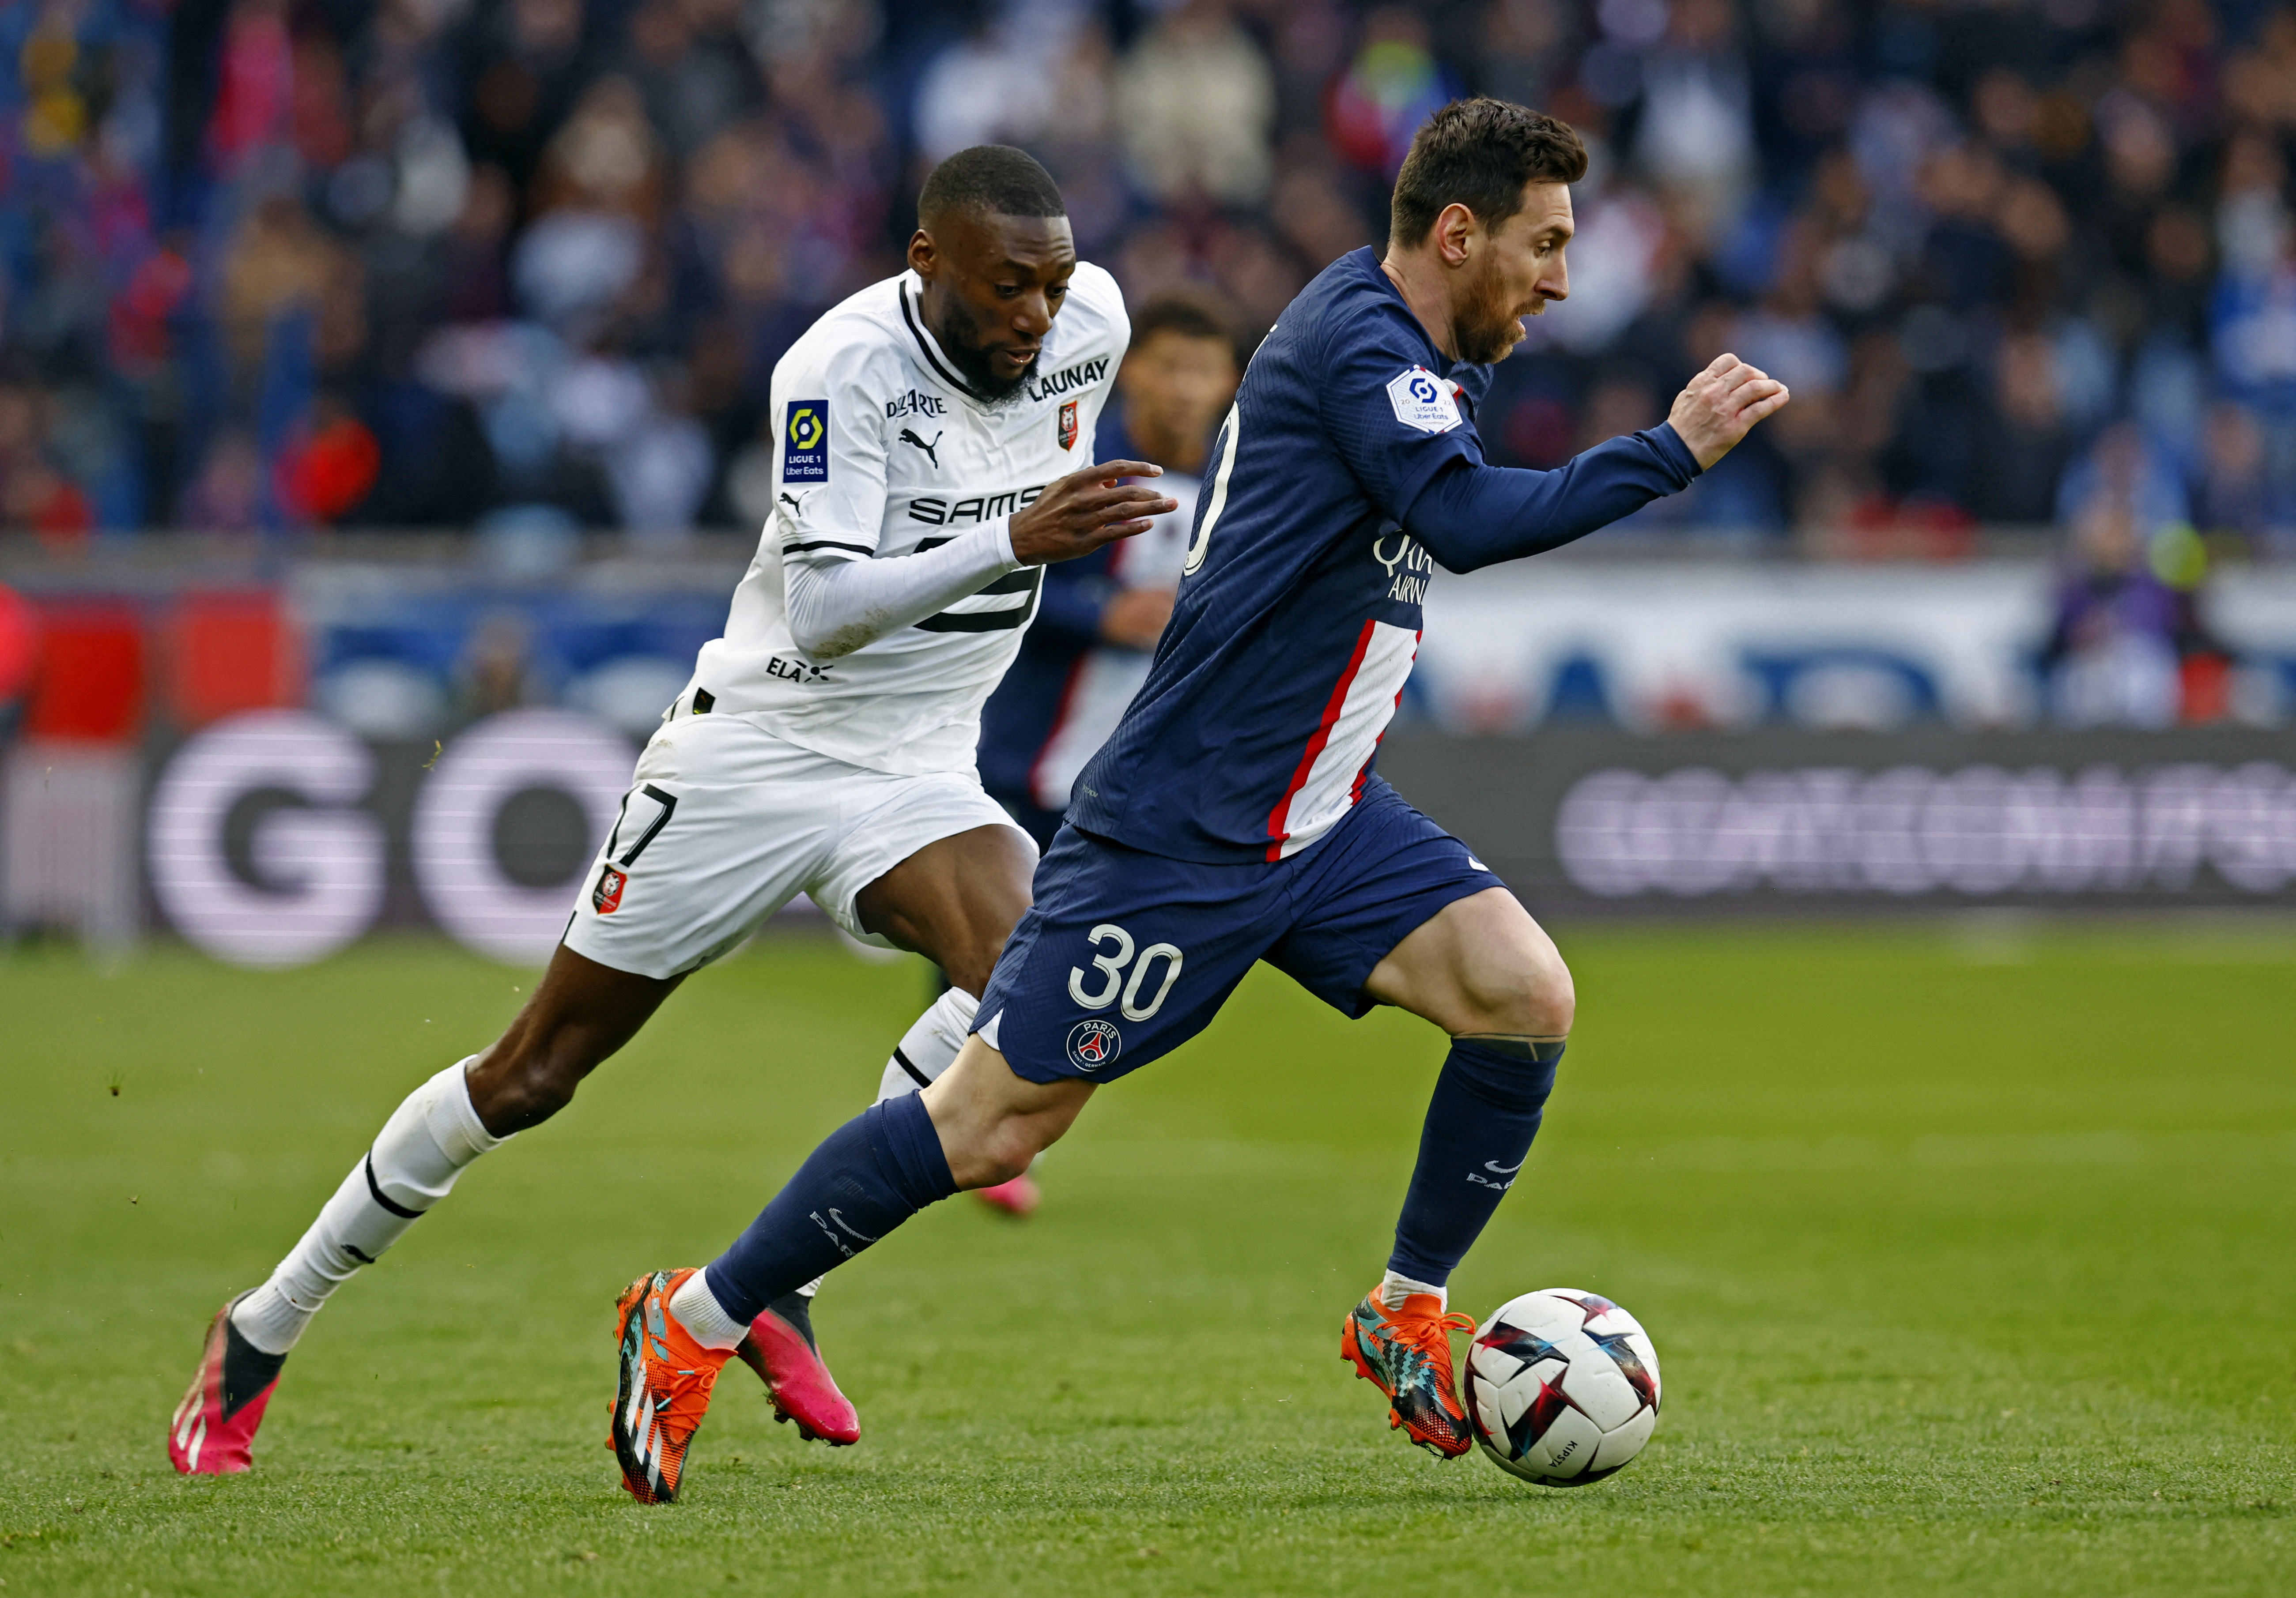 Lionel registró 26 pérdidas de balón en la derrota 2-0 frente al Stade Rennais en el Parque de los Príncipes (Foto: Reuters)